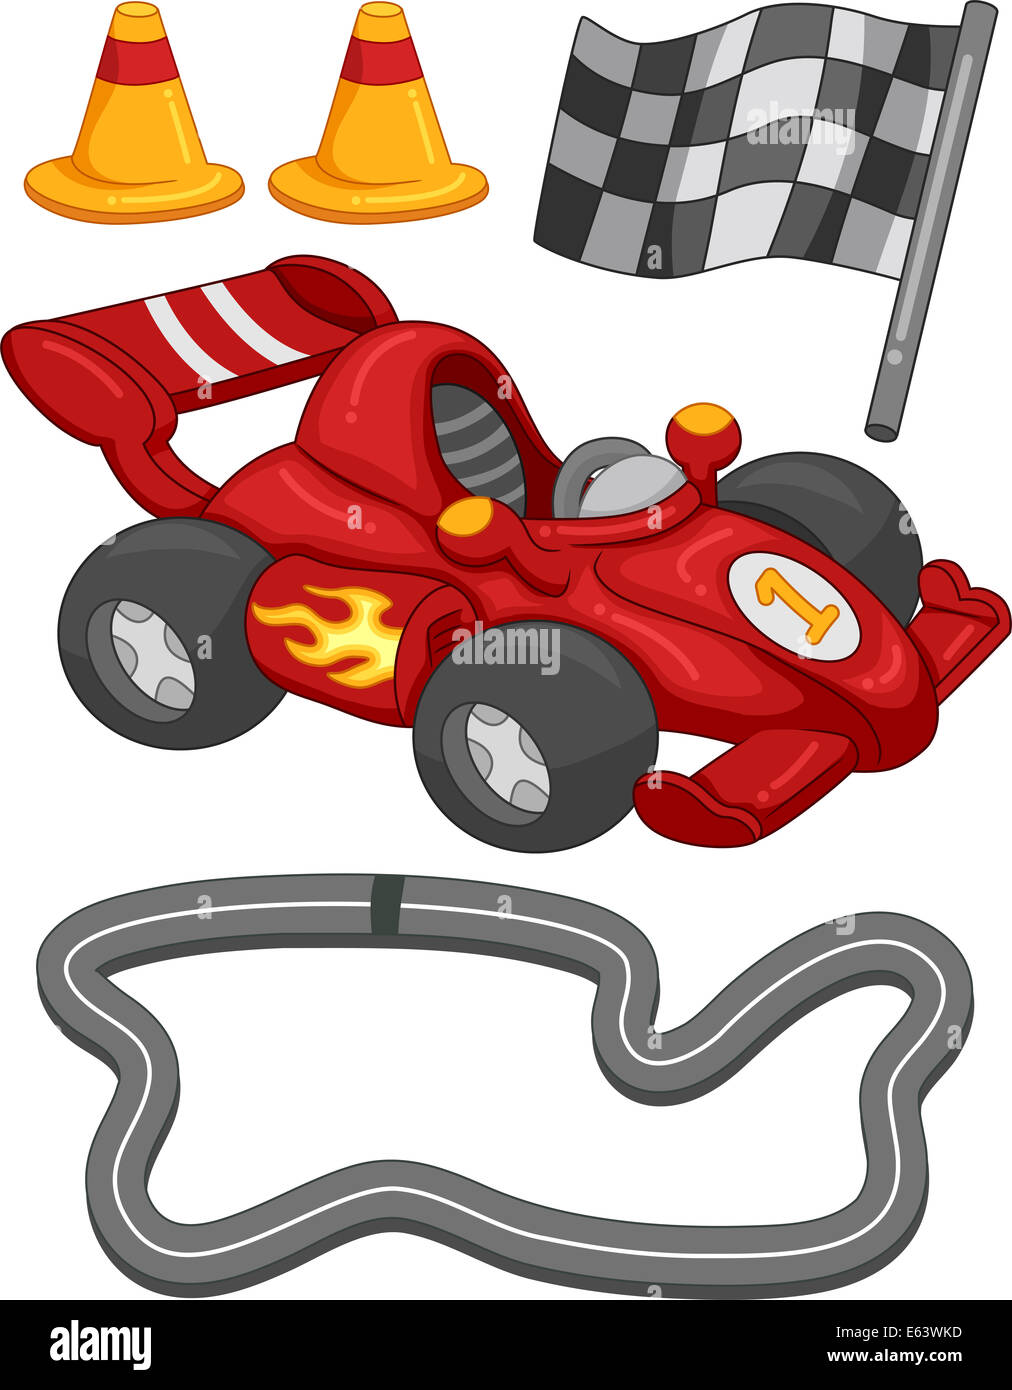 Abbildung mit verschiedenen Rennen Auto Elemente Stockfoto